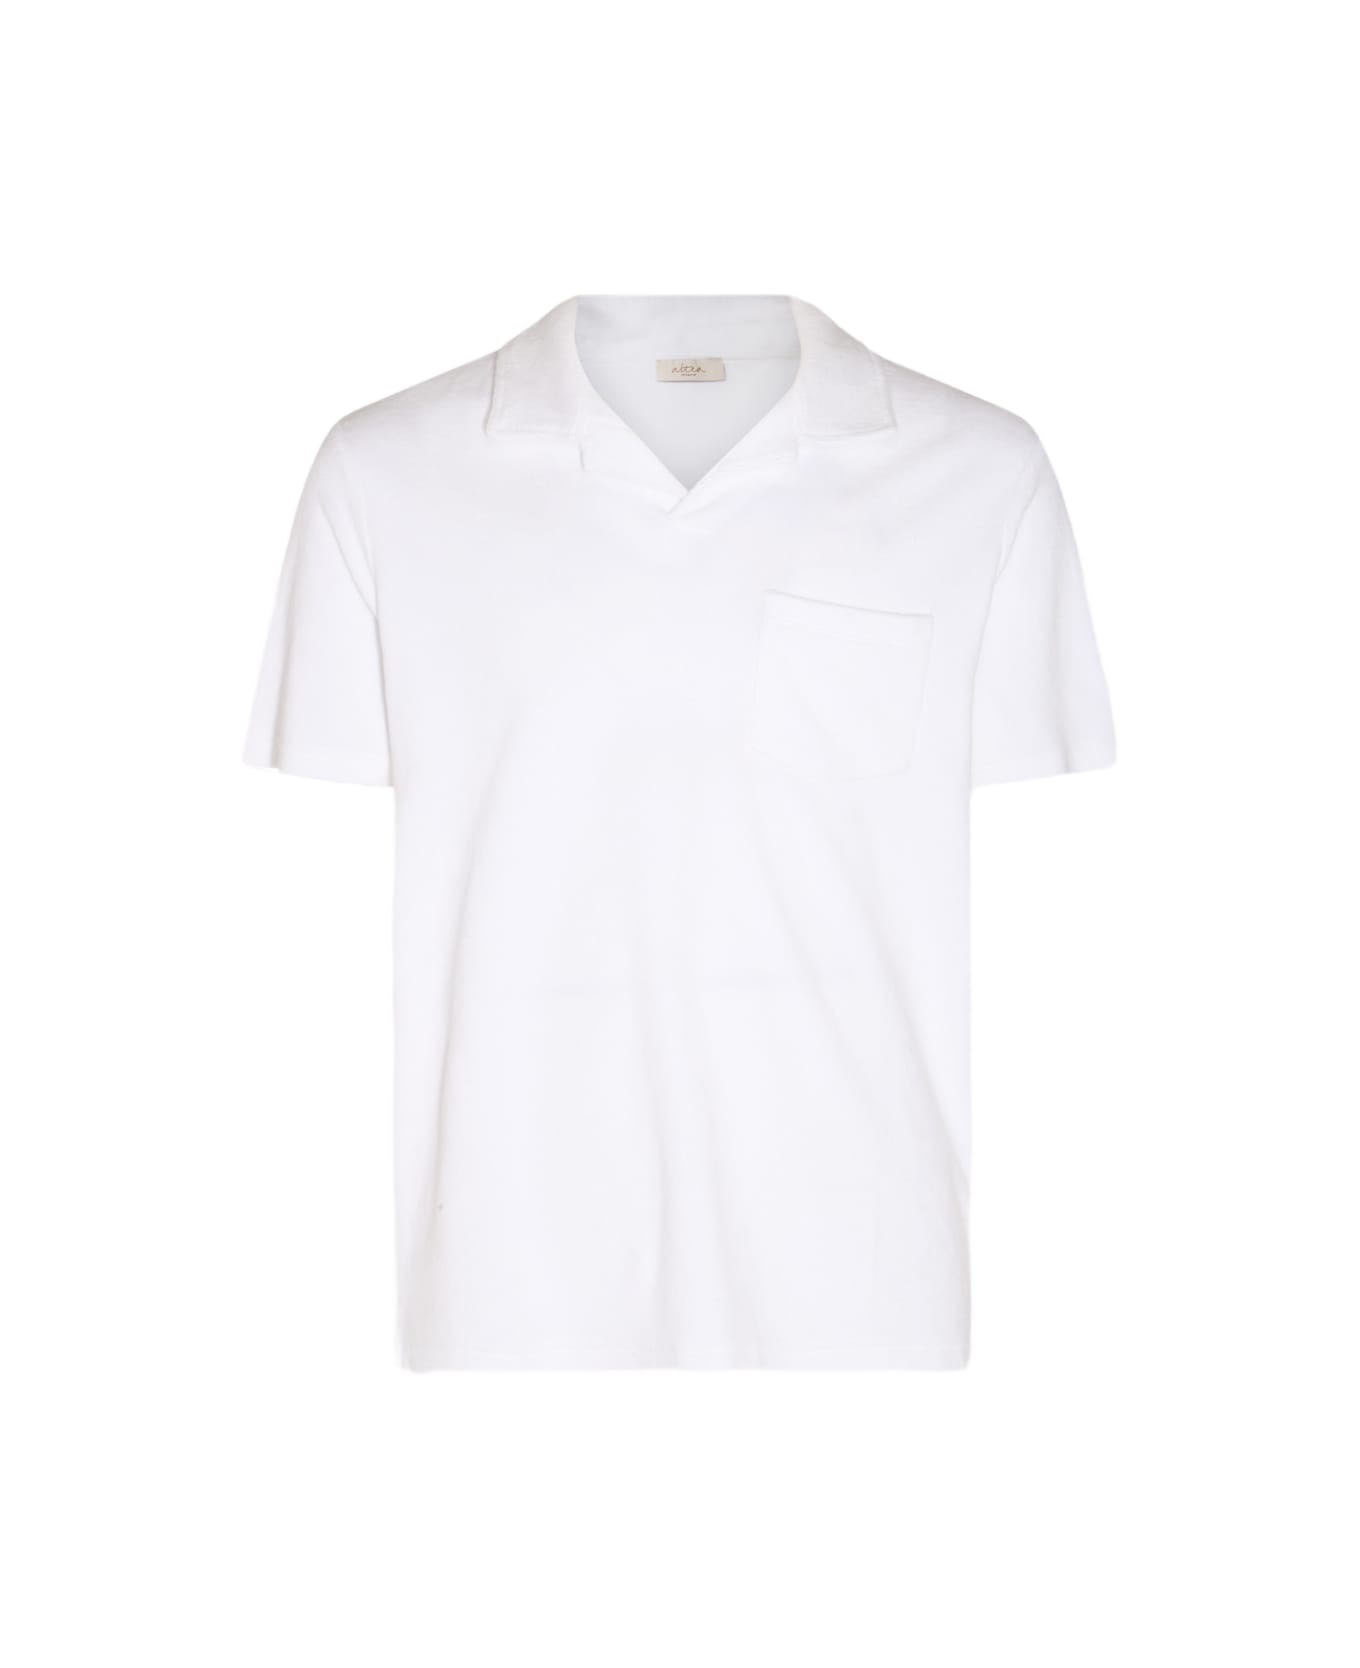 Altea White Cotton Polo Shirt - White